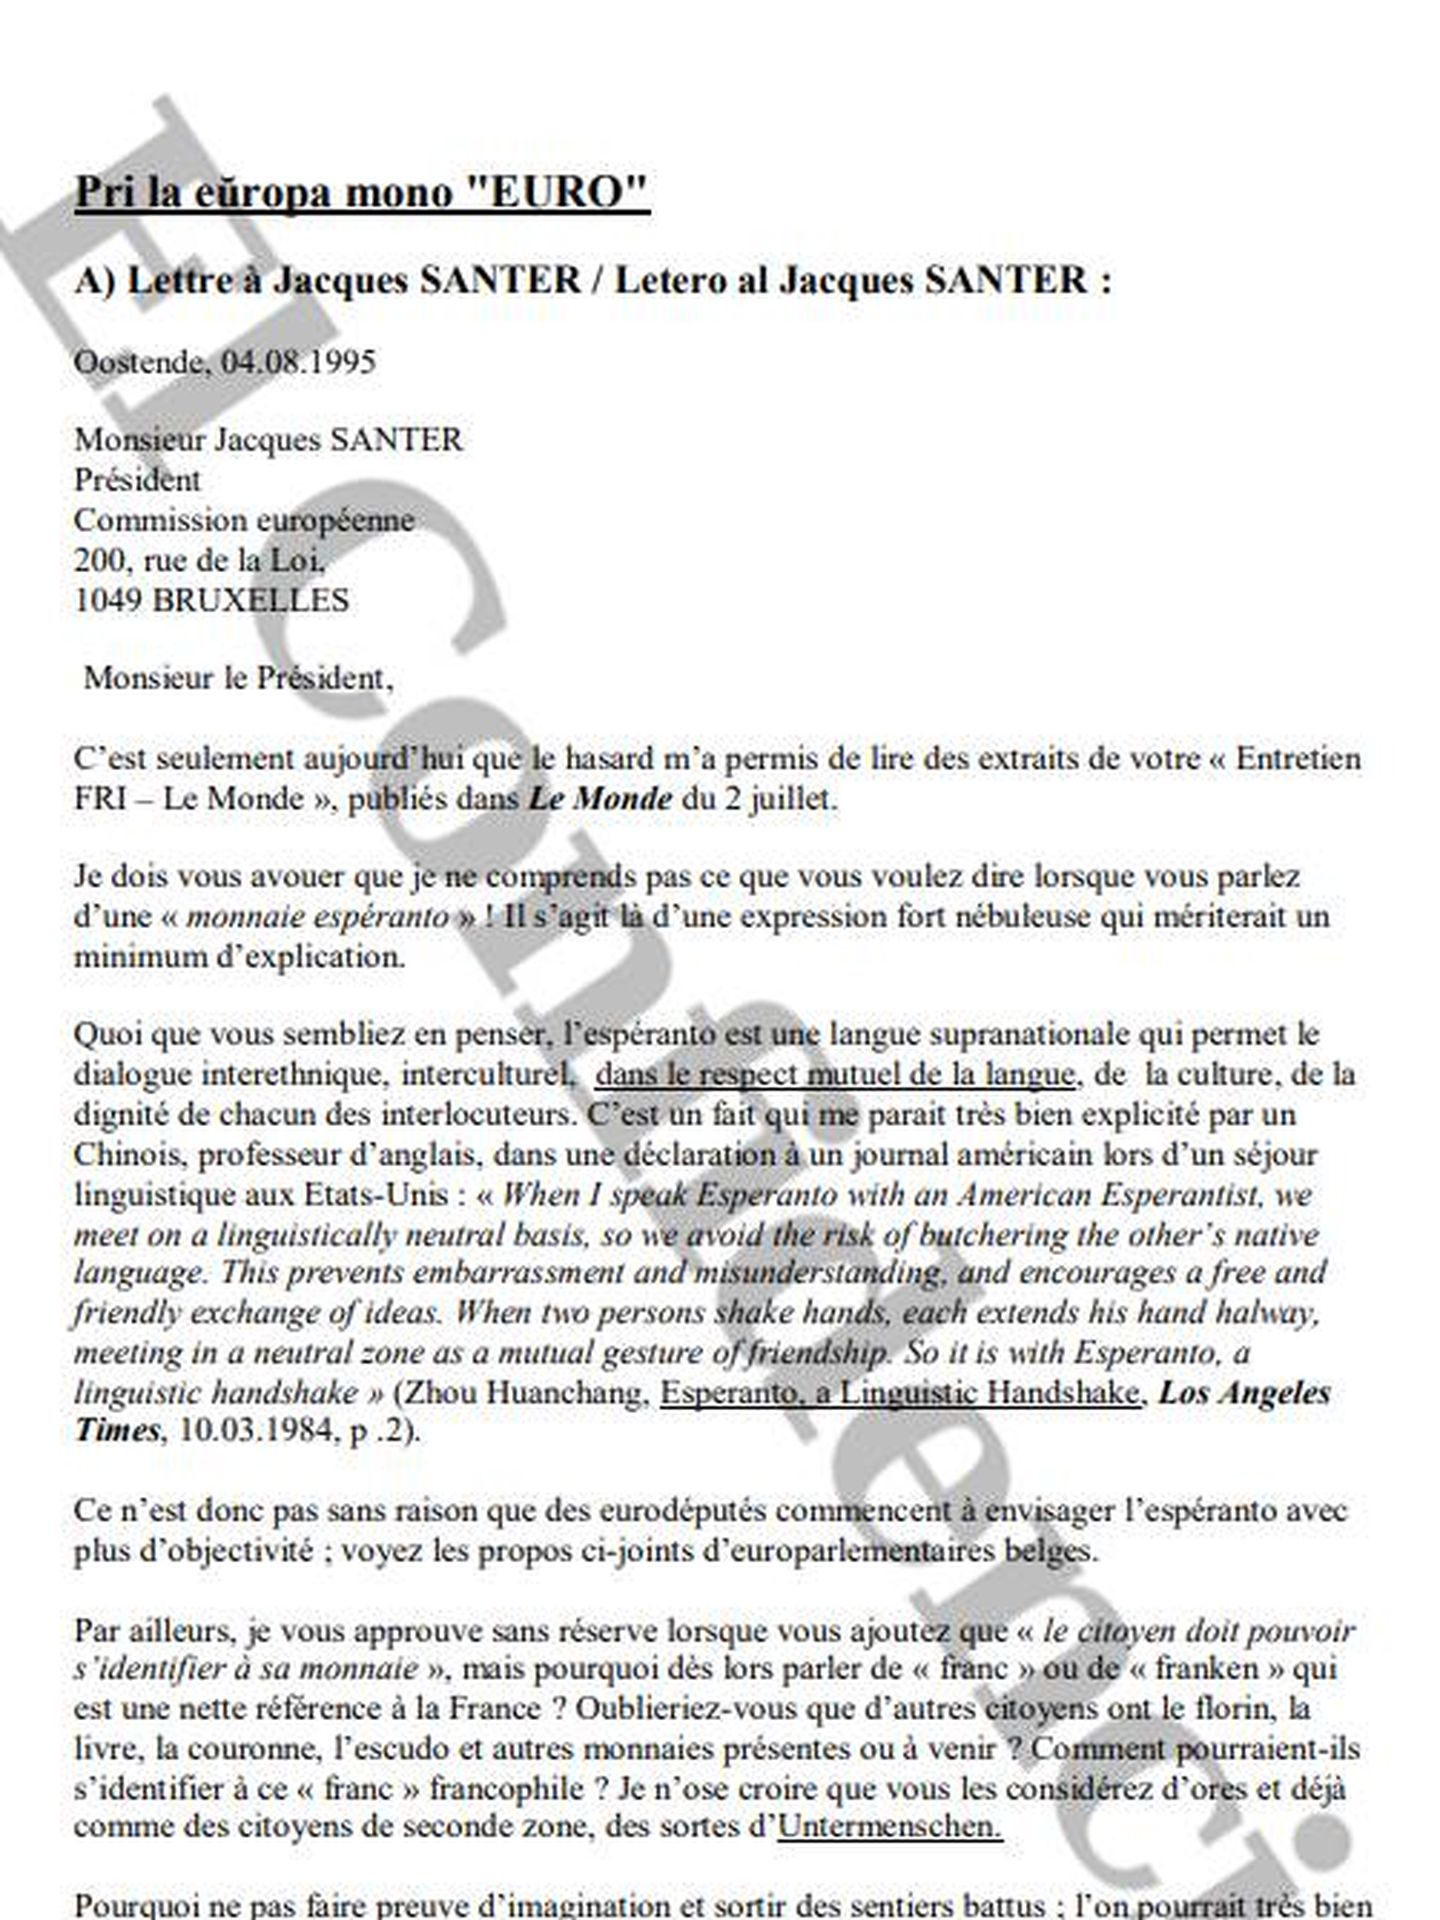 El documento oficial de la carta de Germain Pirlot al presidente de la Comisión Europea en 1995 en francés y en esperanto. 